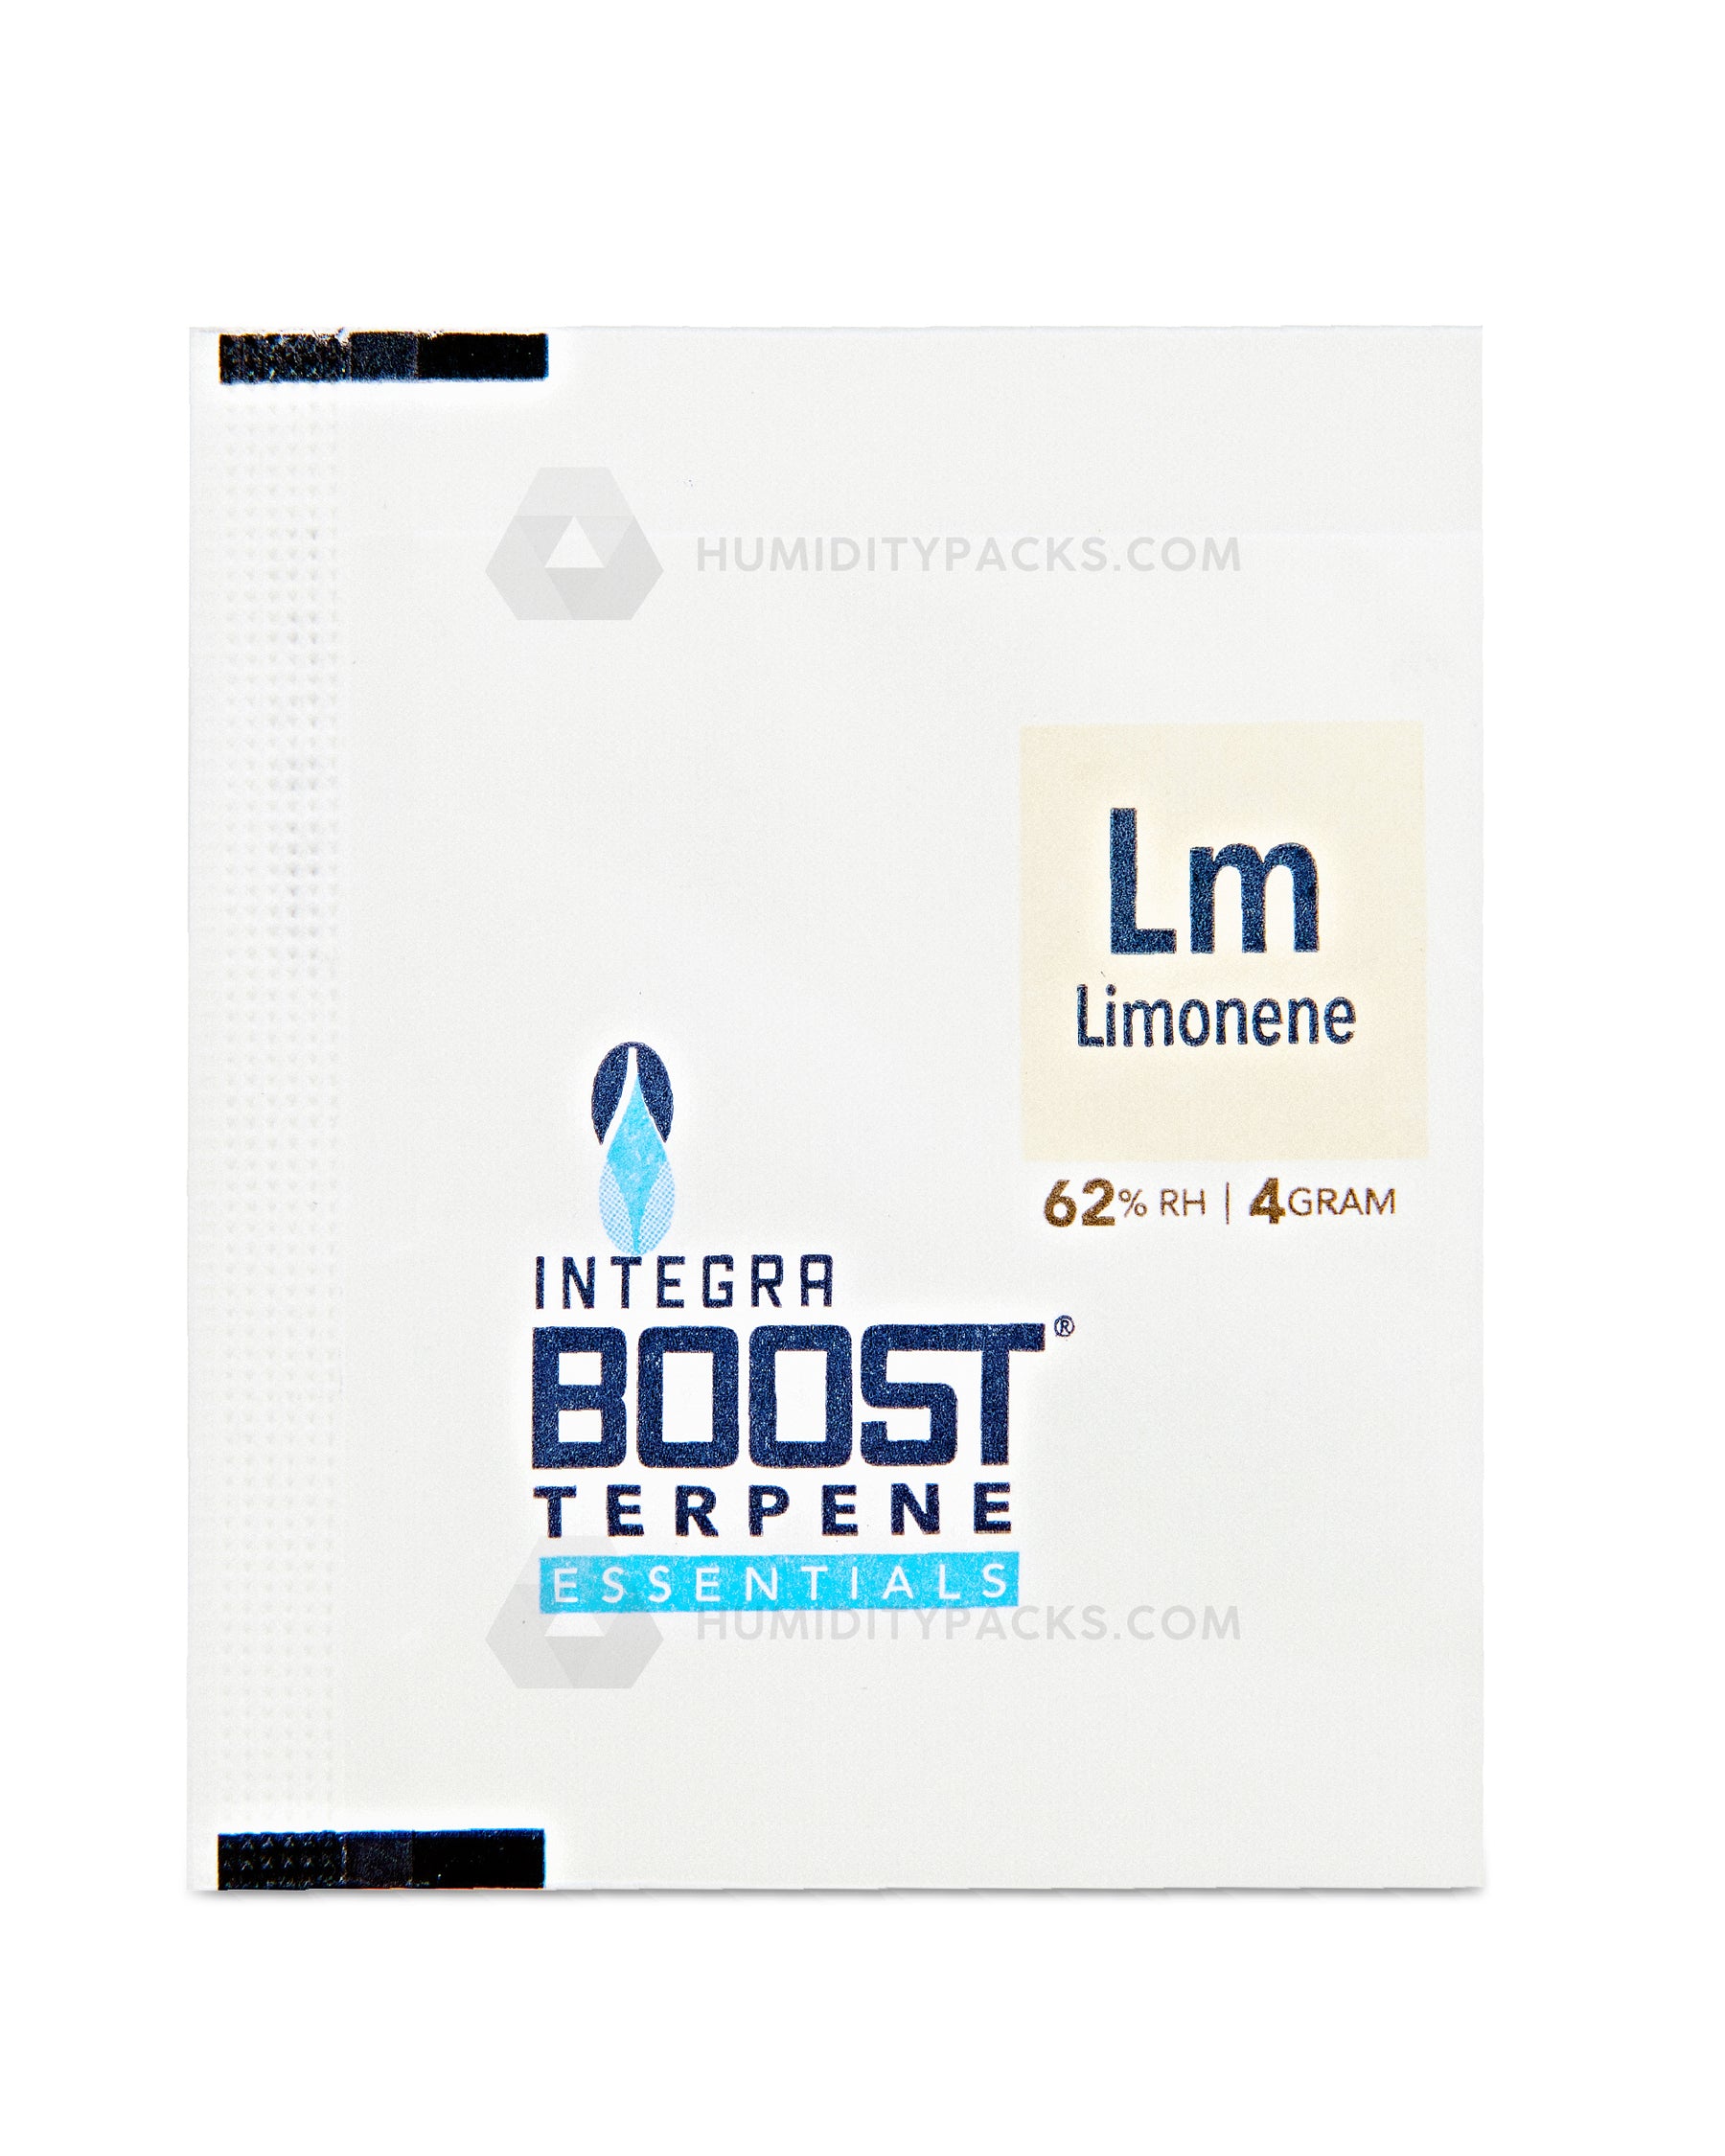 Integra Boost 4 Gram 2-Way Terpene Essentials Limonene Humidity Packs (62%) 48-Box Humidity Packs - 4